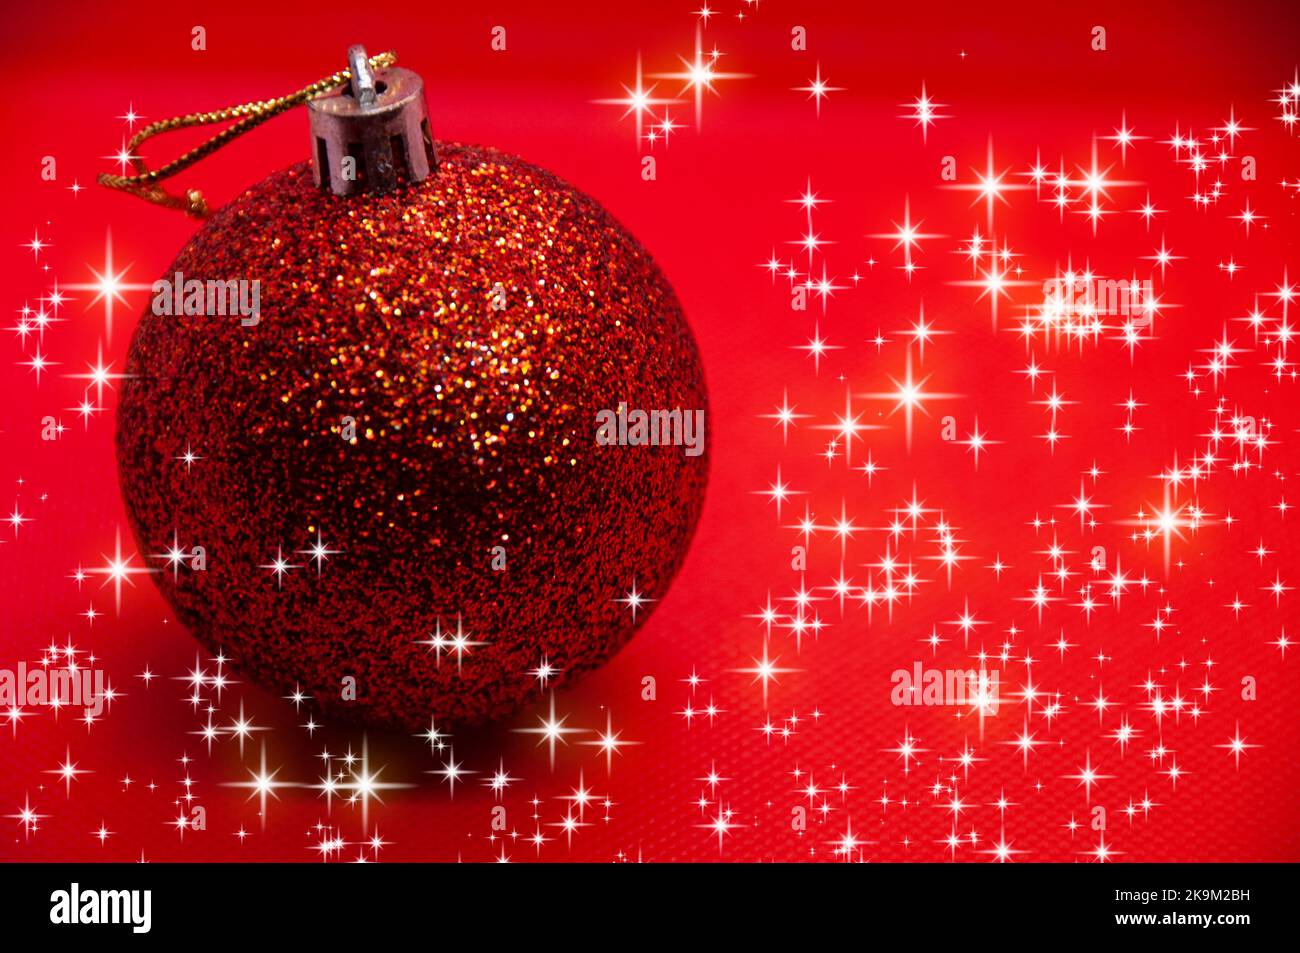 Weihnachtskugel auf rotem Hintergrund, umgeben von leuchtenden Sternen. Weihnachtsfeier Konzept. Stockfoto